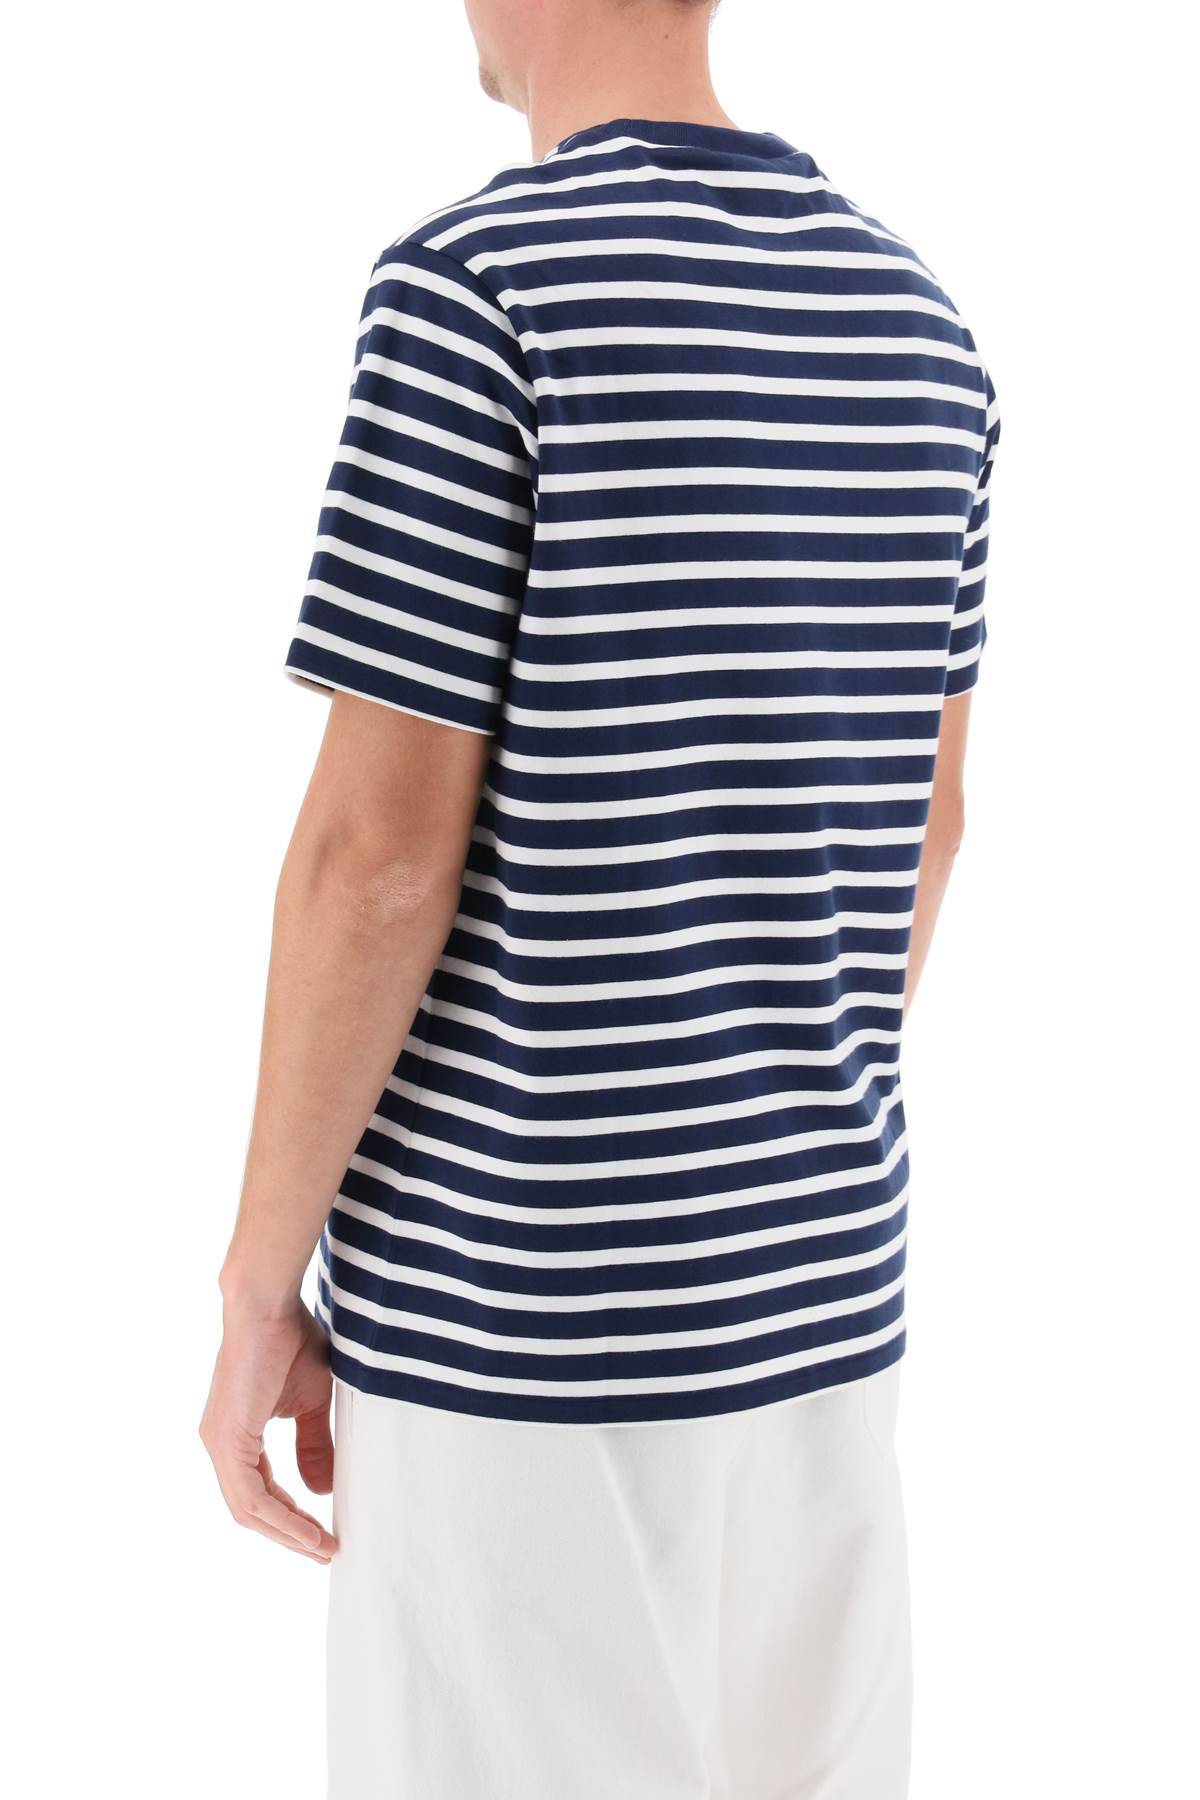 Shop Apc Emilien Striped T-shirt In White,blue